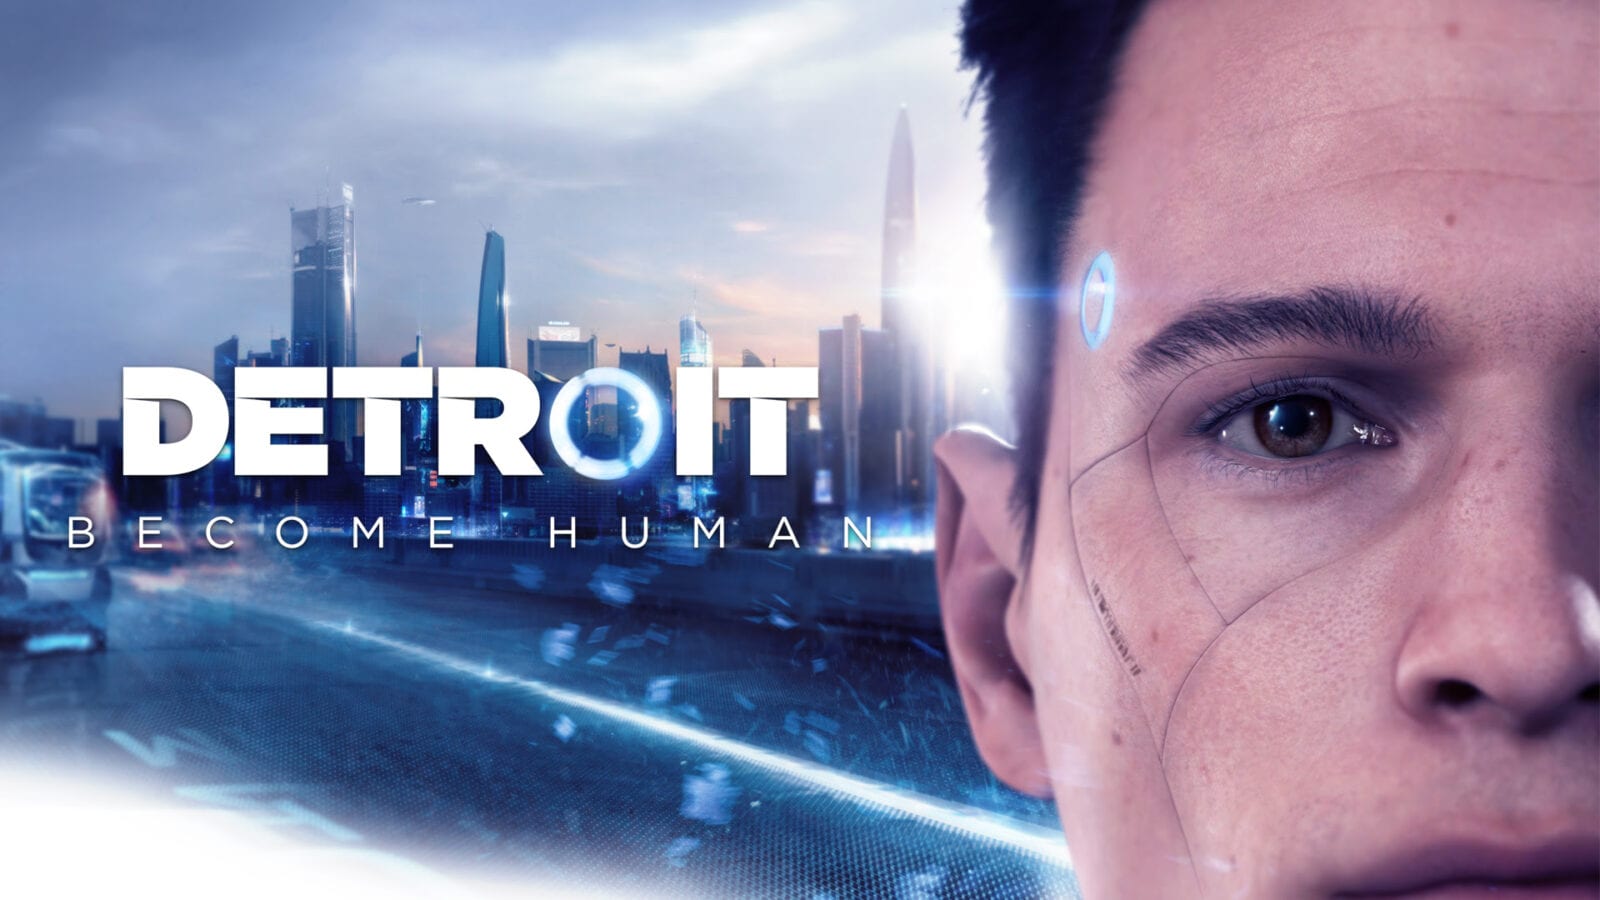 JOGUEI E RECOMENDEI  Detroit: Become Human (2018), esperança ou  rebelião? - Notícias Geek - BCharts Fórum